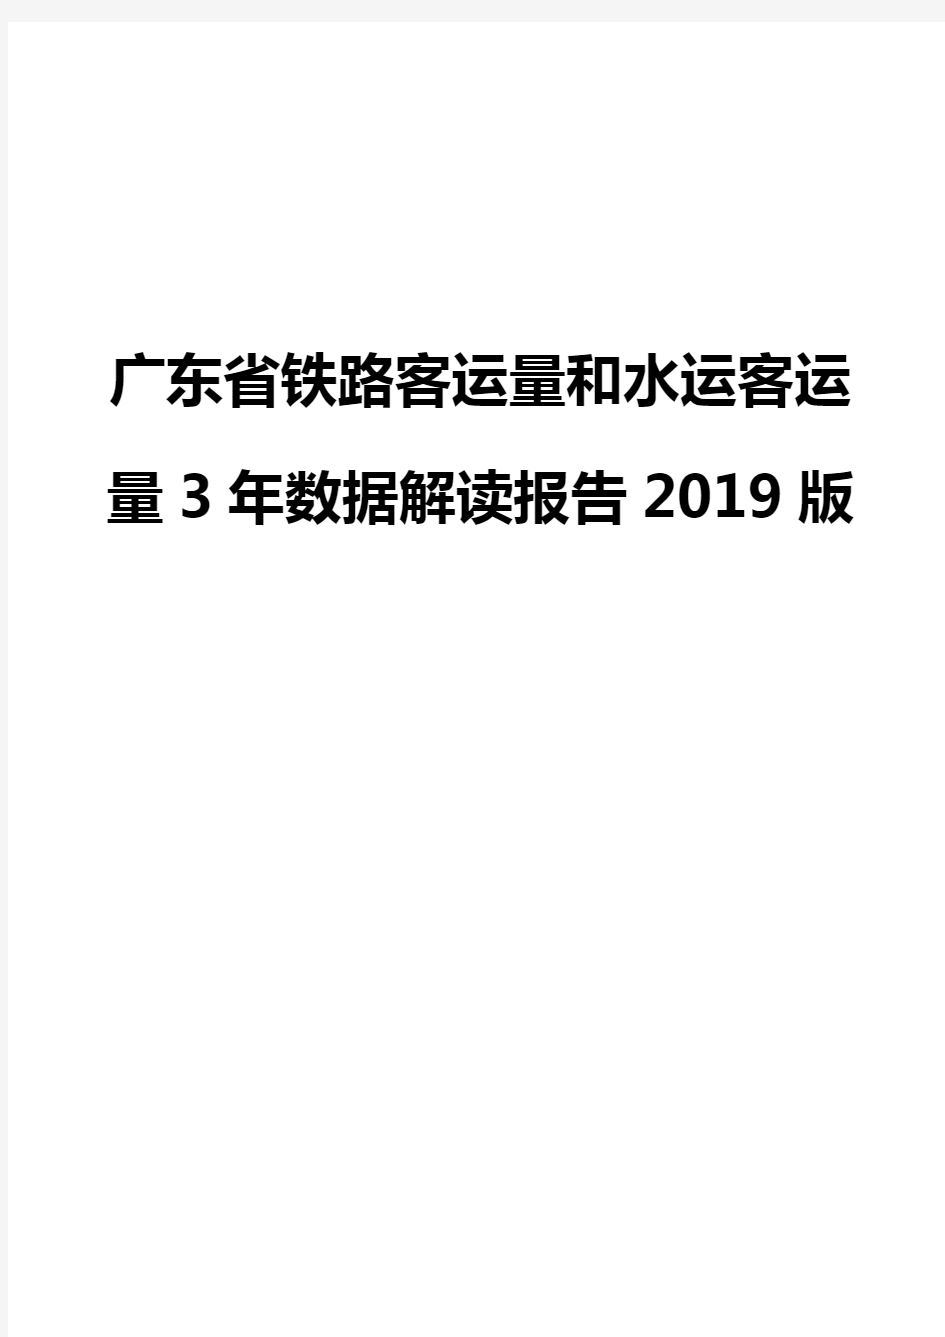 广东省铁路客运量和水运客运量3年数据解读报告2019版